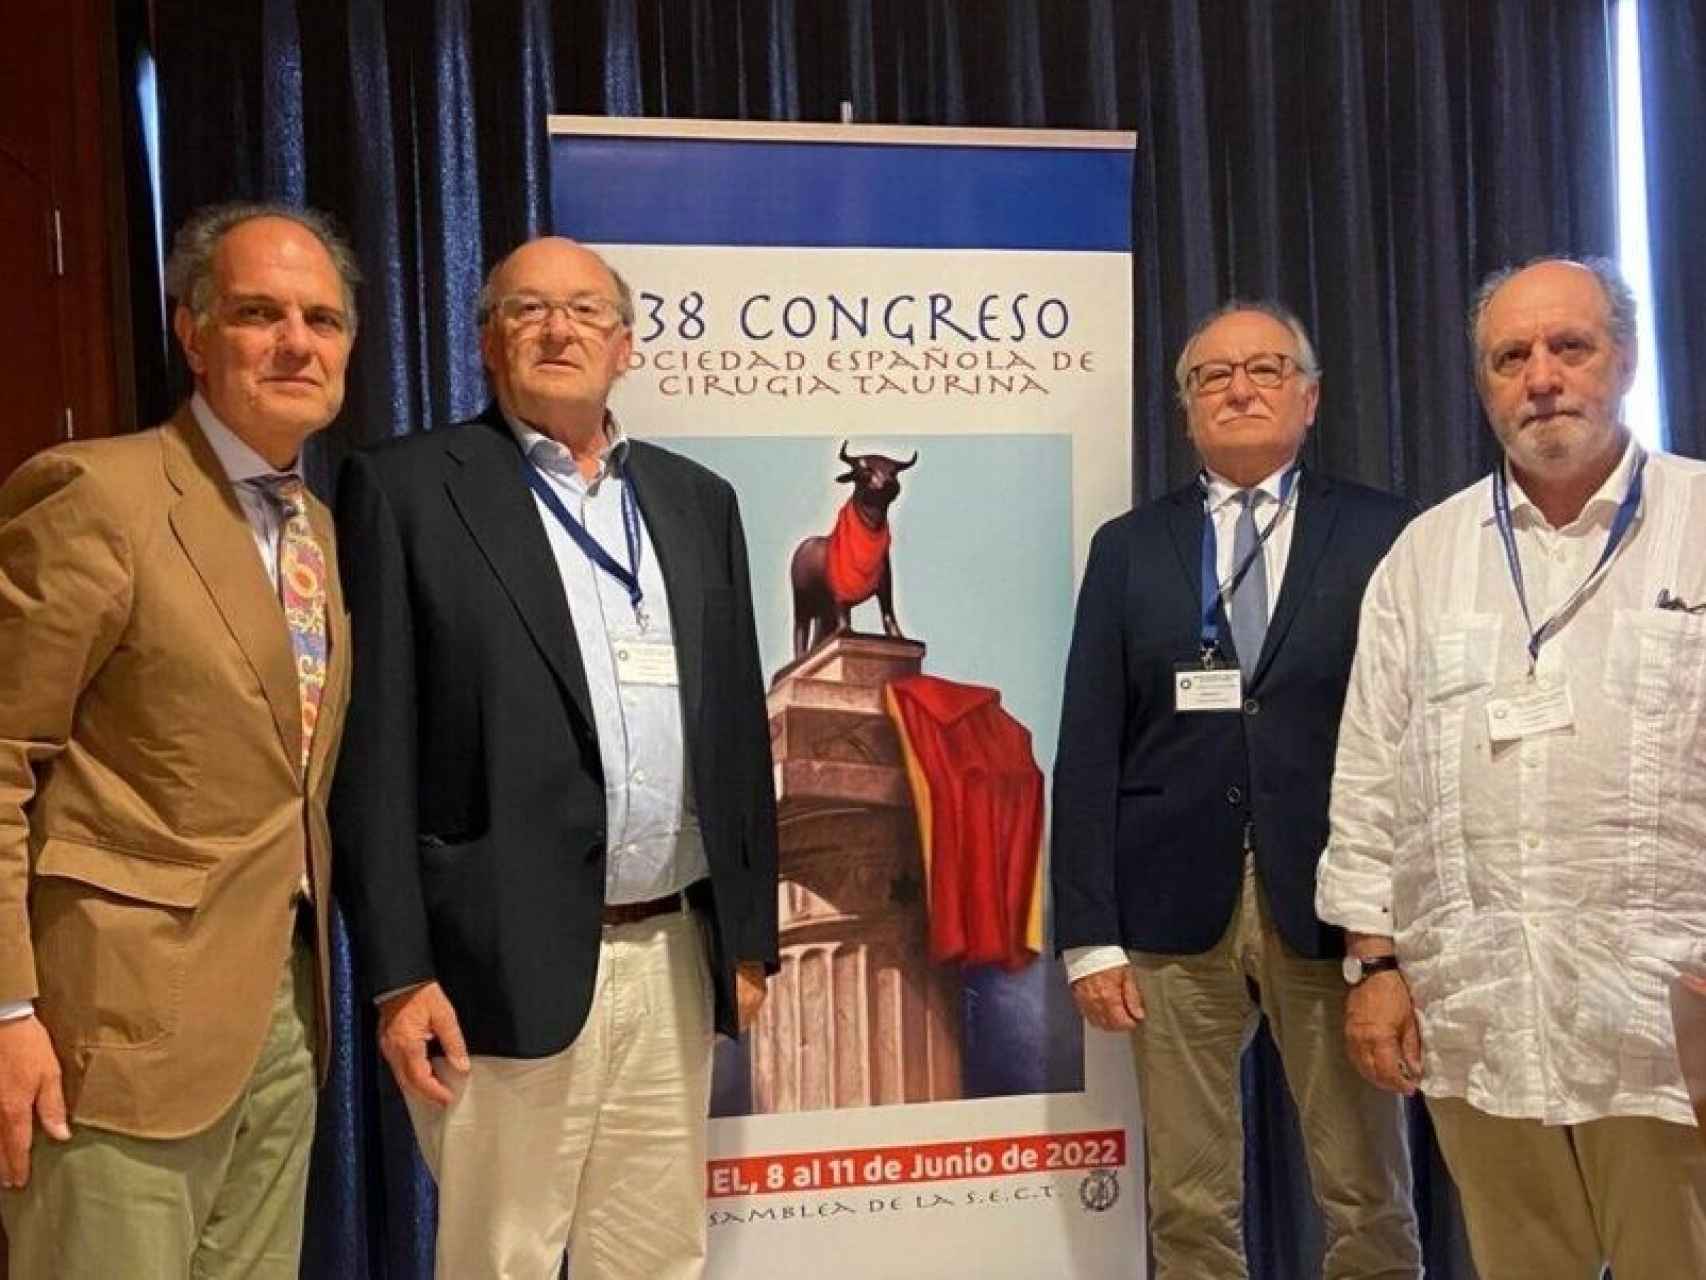 Congreso de la Sociedad Española de Cirugía Taurina